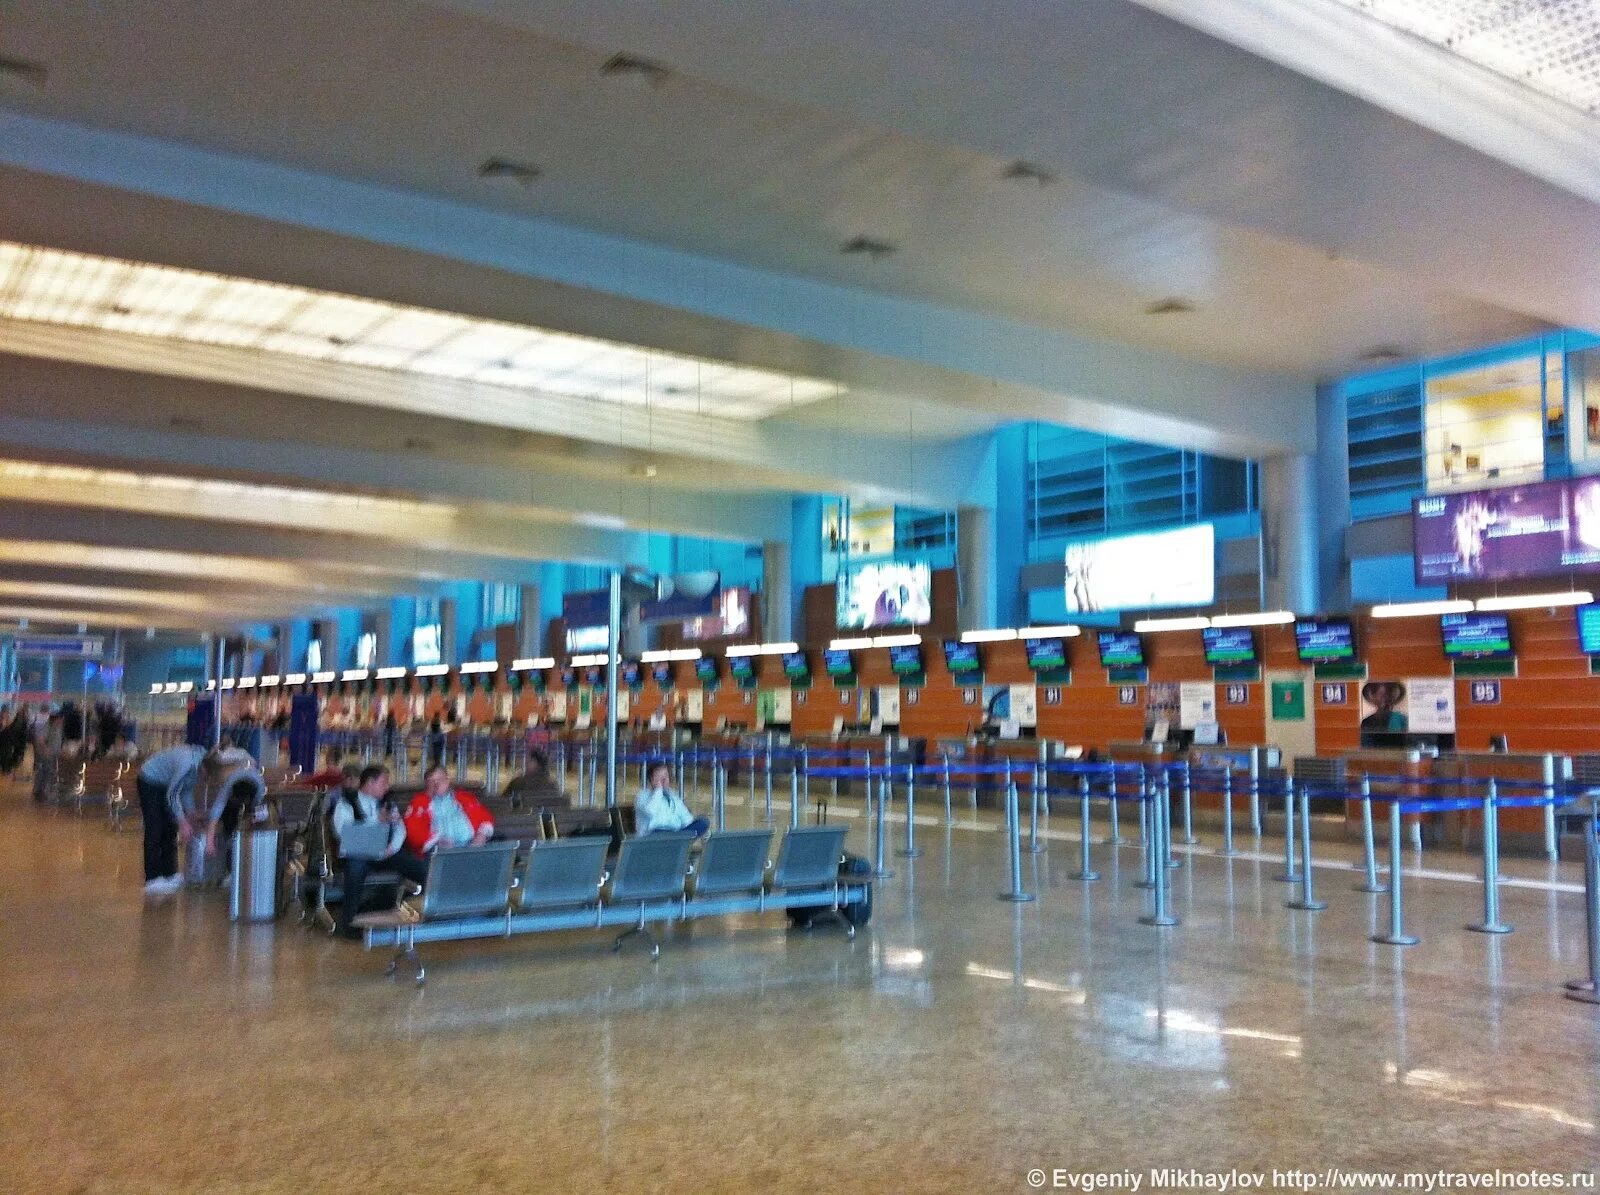 Шереметьево терминал египет. Шереметьево терминал д внутри. Международный аэропорт Шереметьево, терминал d, Химки. Аэропорт Шереметьево терминал д фото. Шереметьево изнутри терминал д.